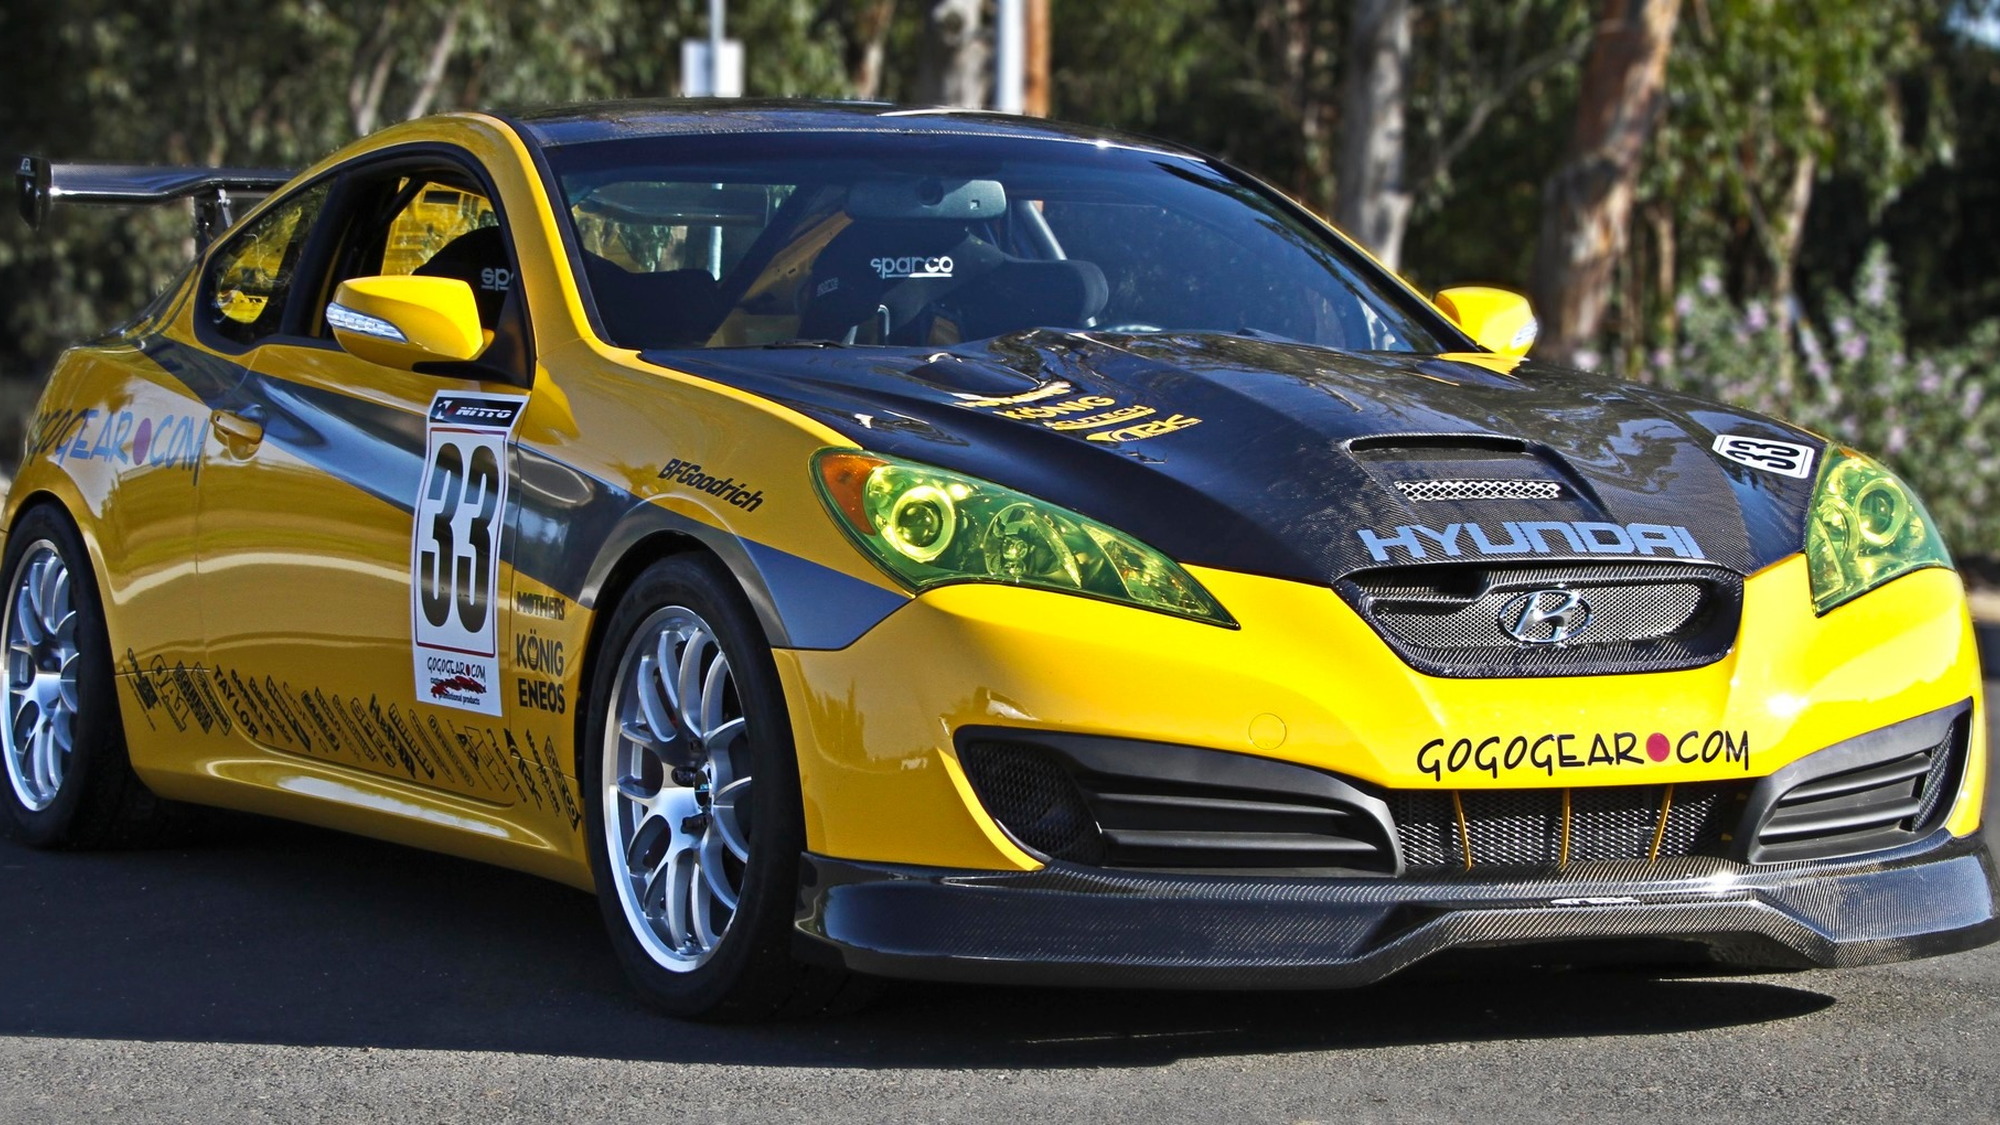 Gogogear Hyundai Genesis Coupe race car